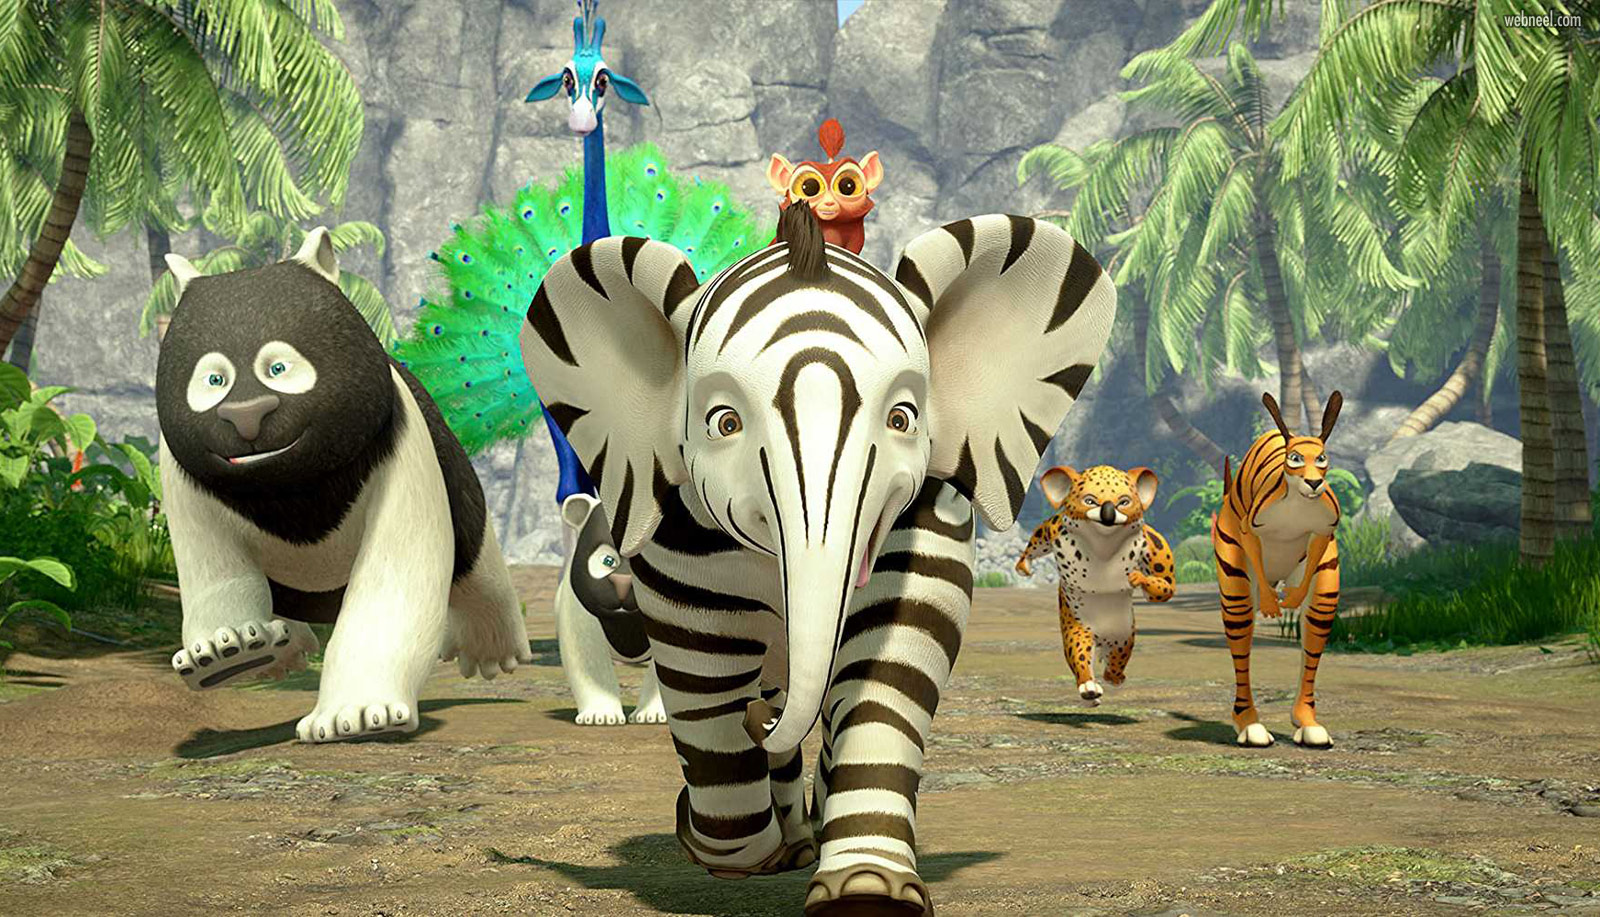 3d animation cartoon animals zafari by david dozoretz